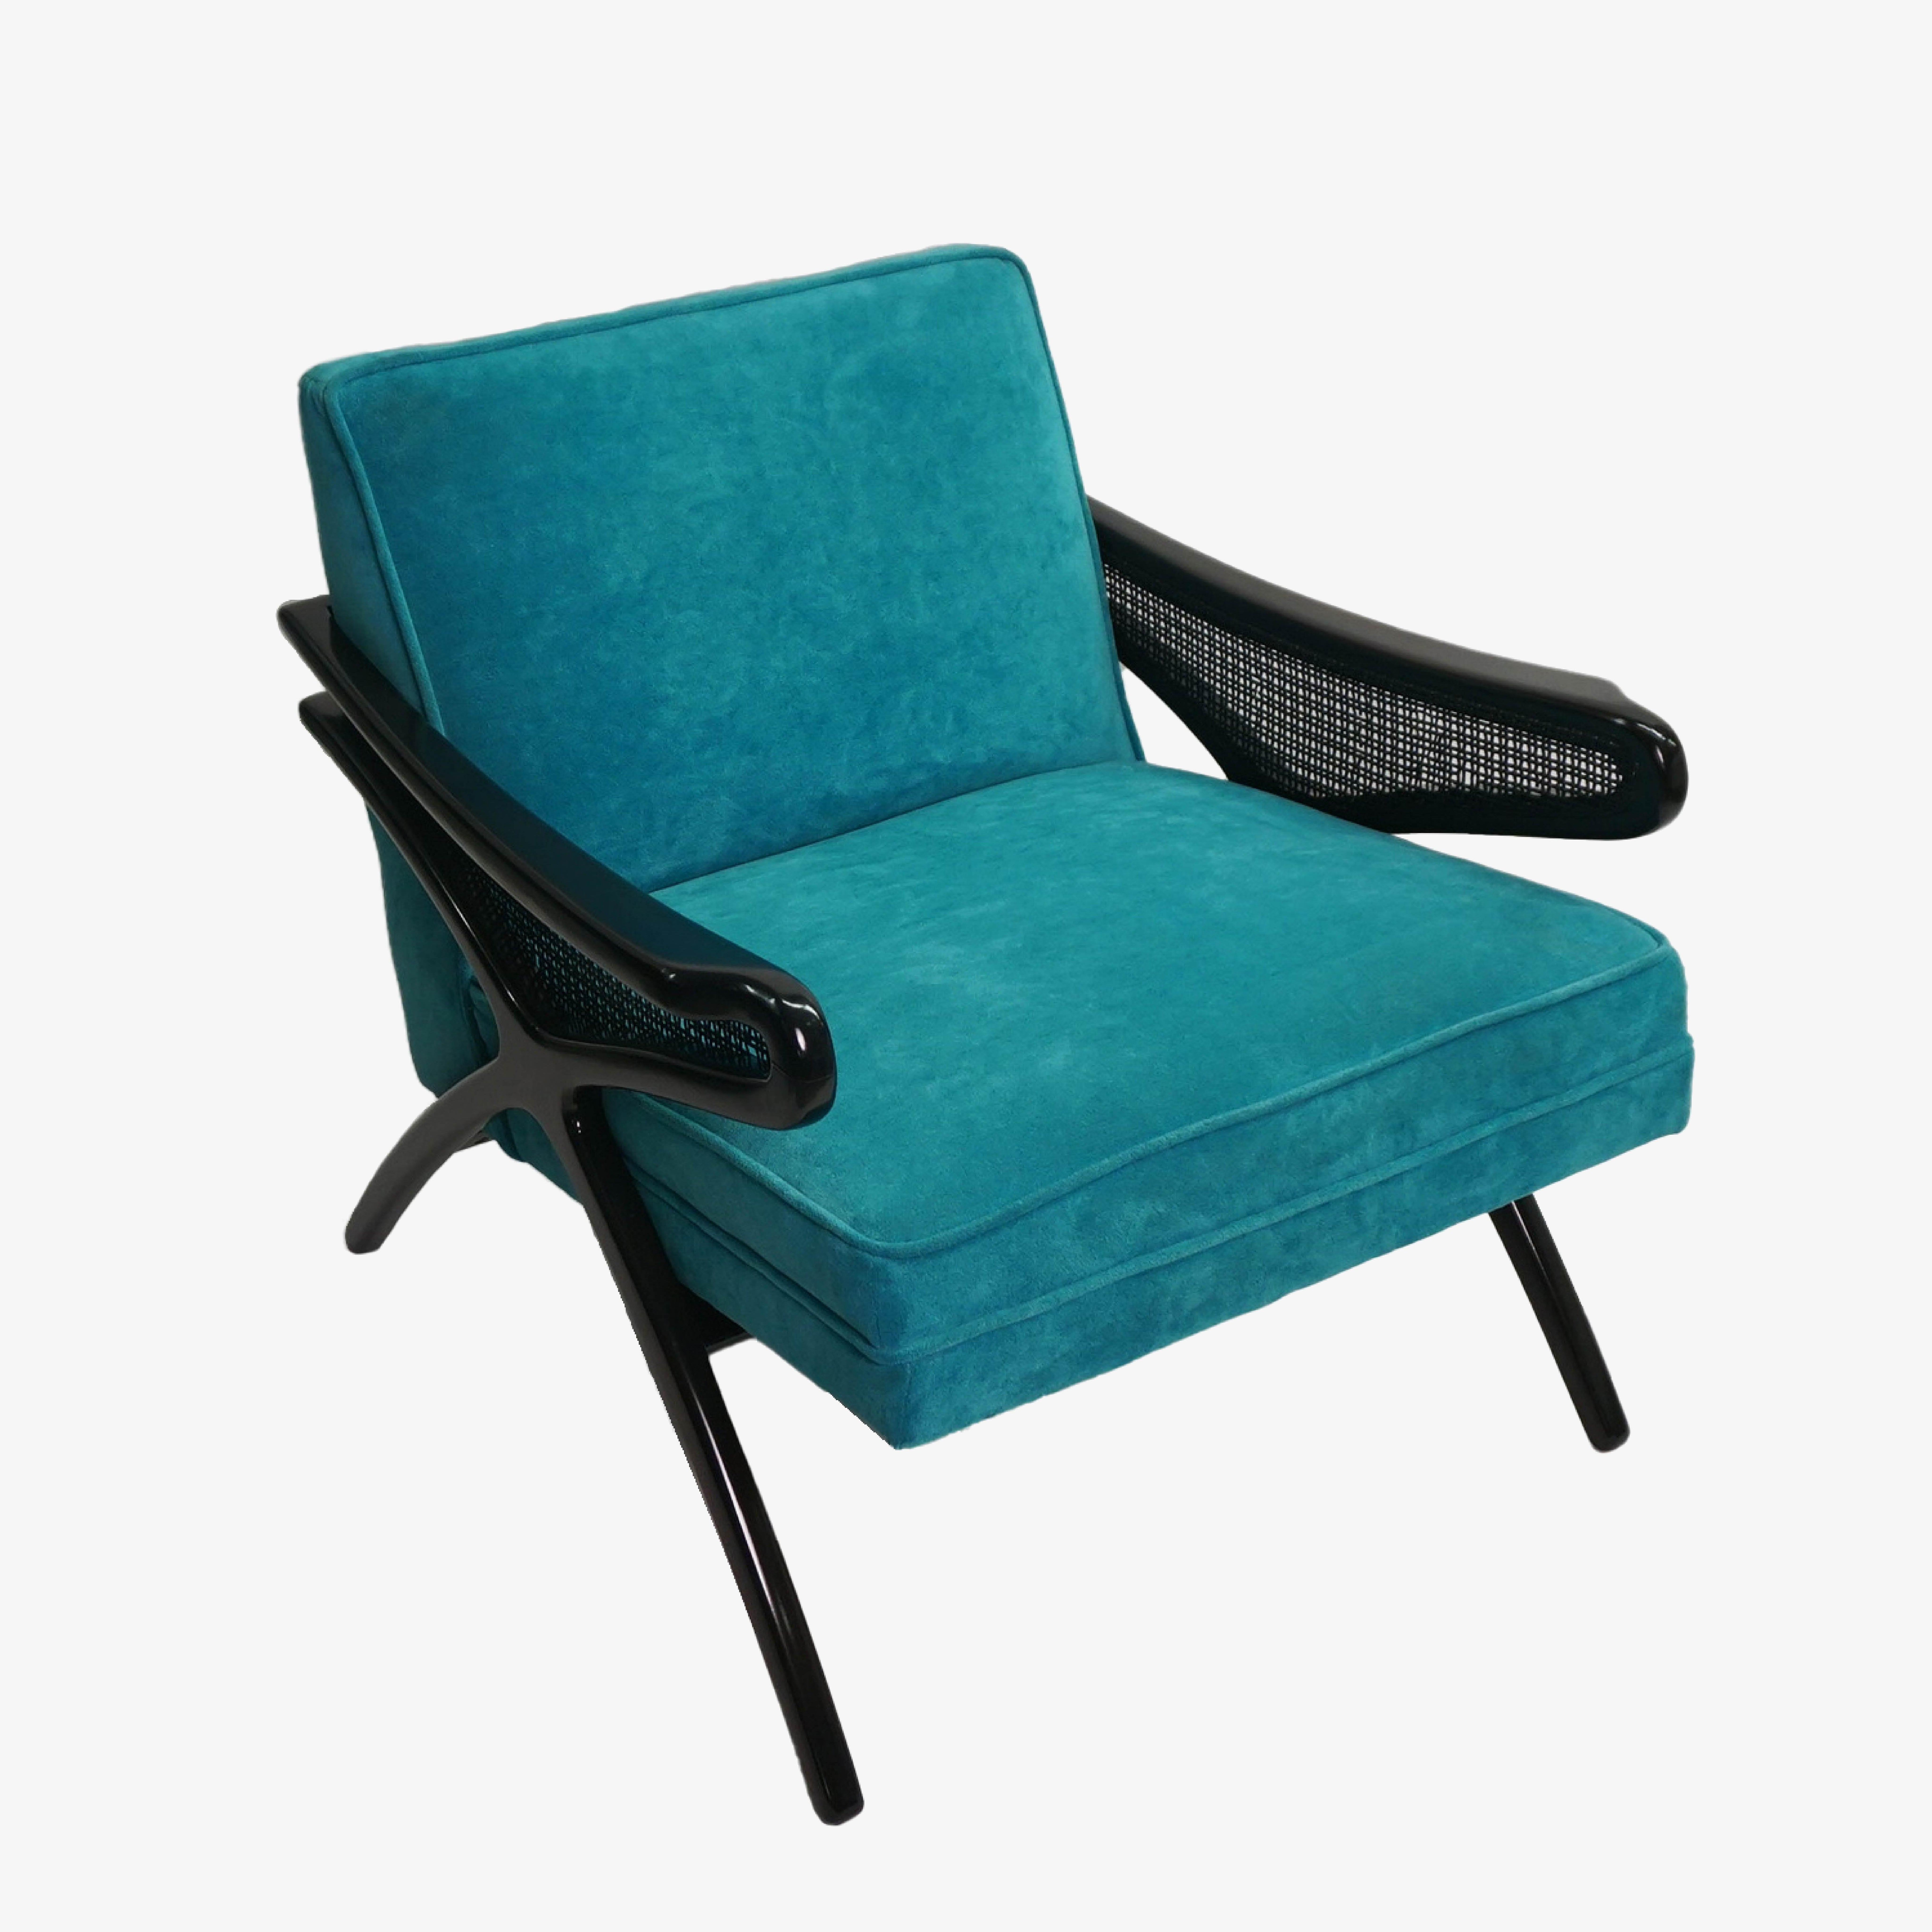 Zum Verkauf steht ein neu restaurierter Mid-Century Modern Butterfly Lounge Chair, circa 1960, aus pfauenblauem Samt. Der aus Nussbaum gefertigte Rahmen wurde für einen auffälligen Kontrast ebonisiert. Es gibt kleine Punkte der Abnutzung zu caning